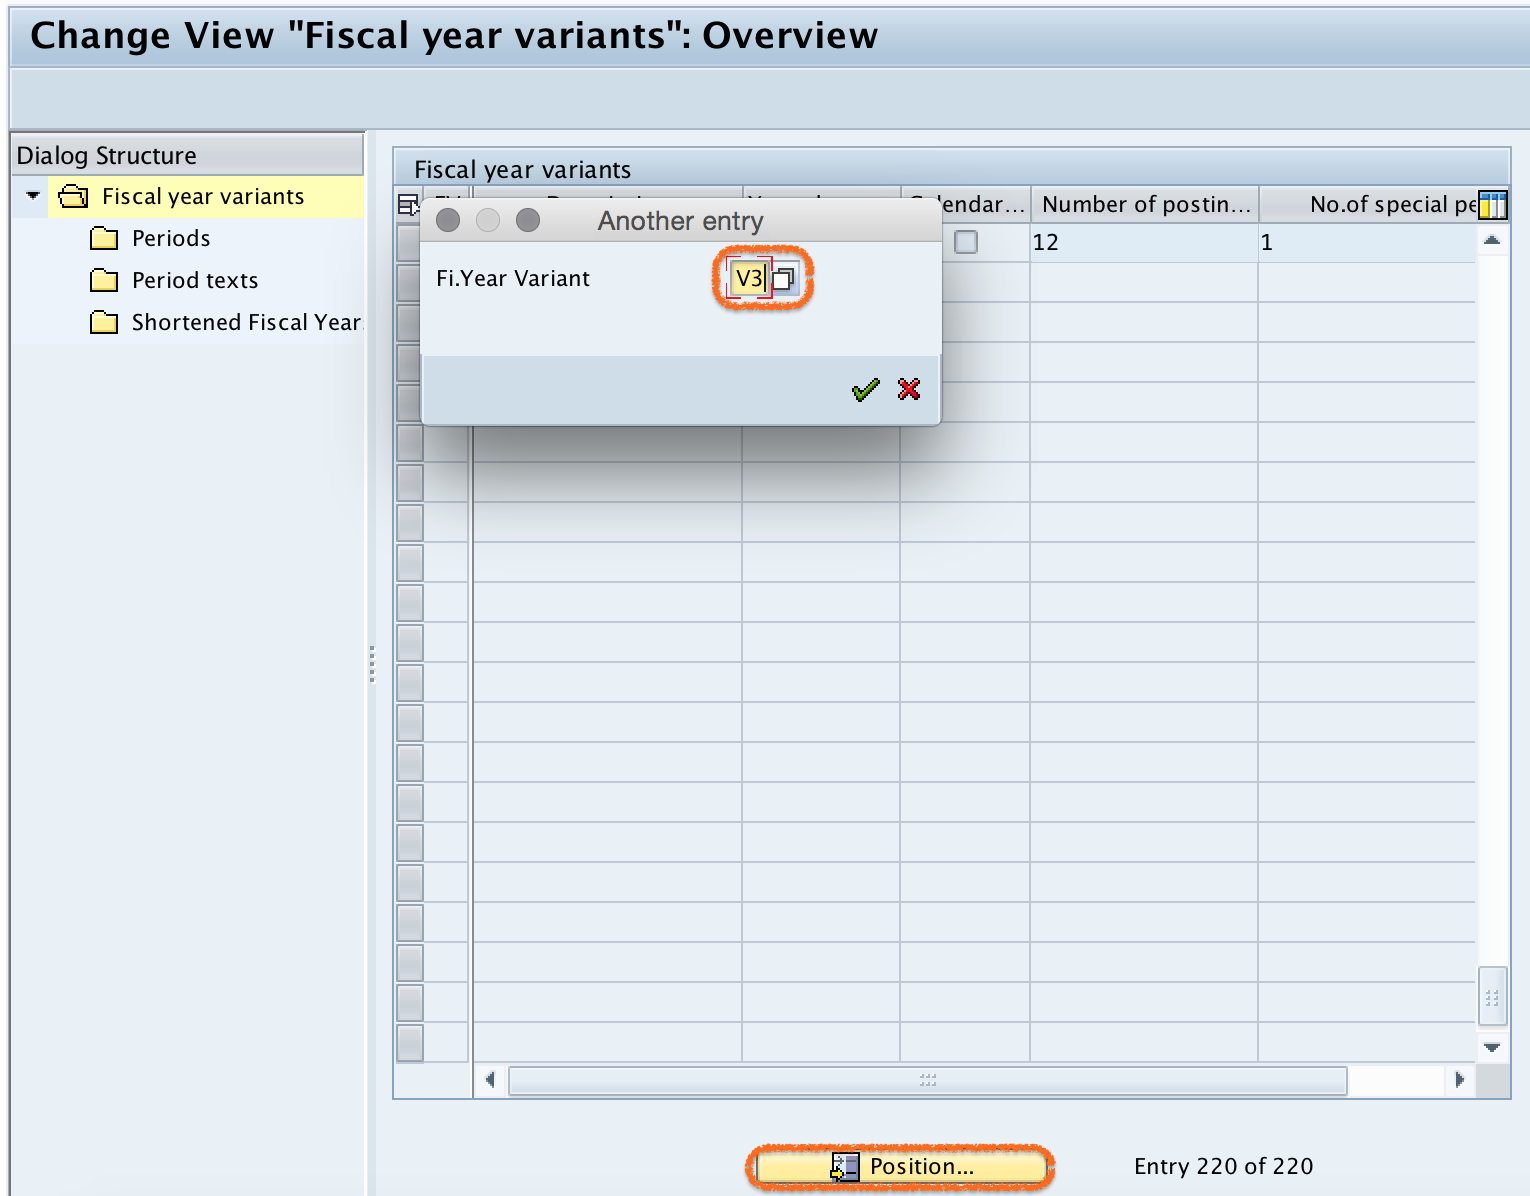 SAP V3 fiscal year variant key